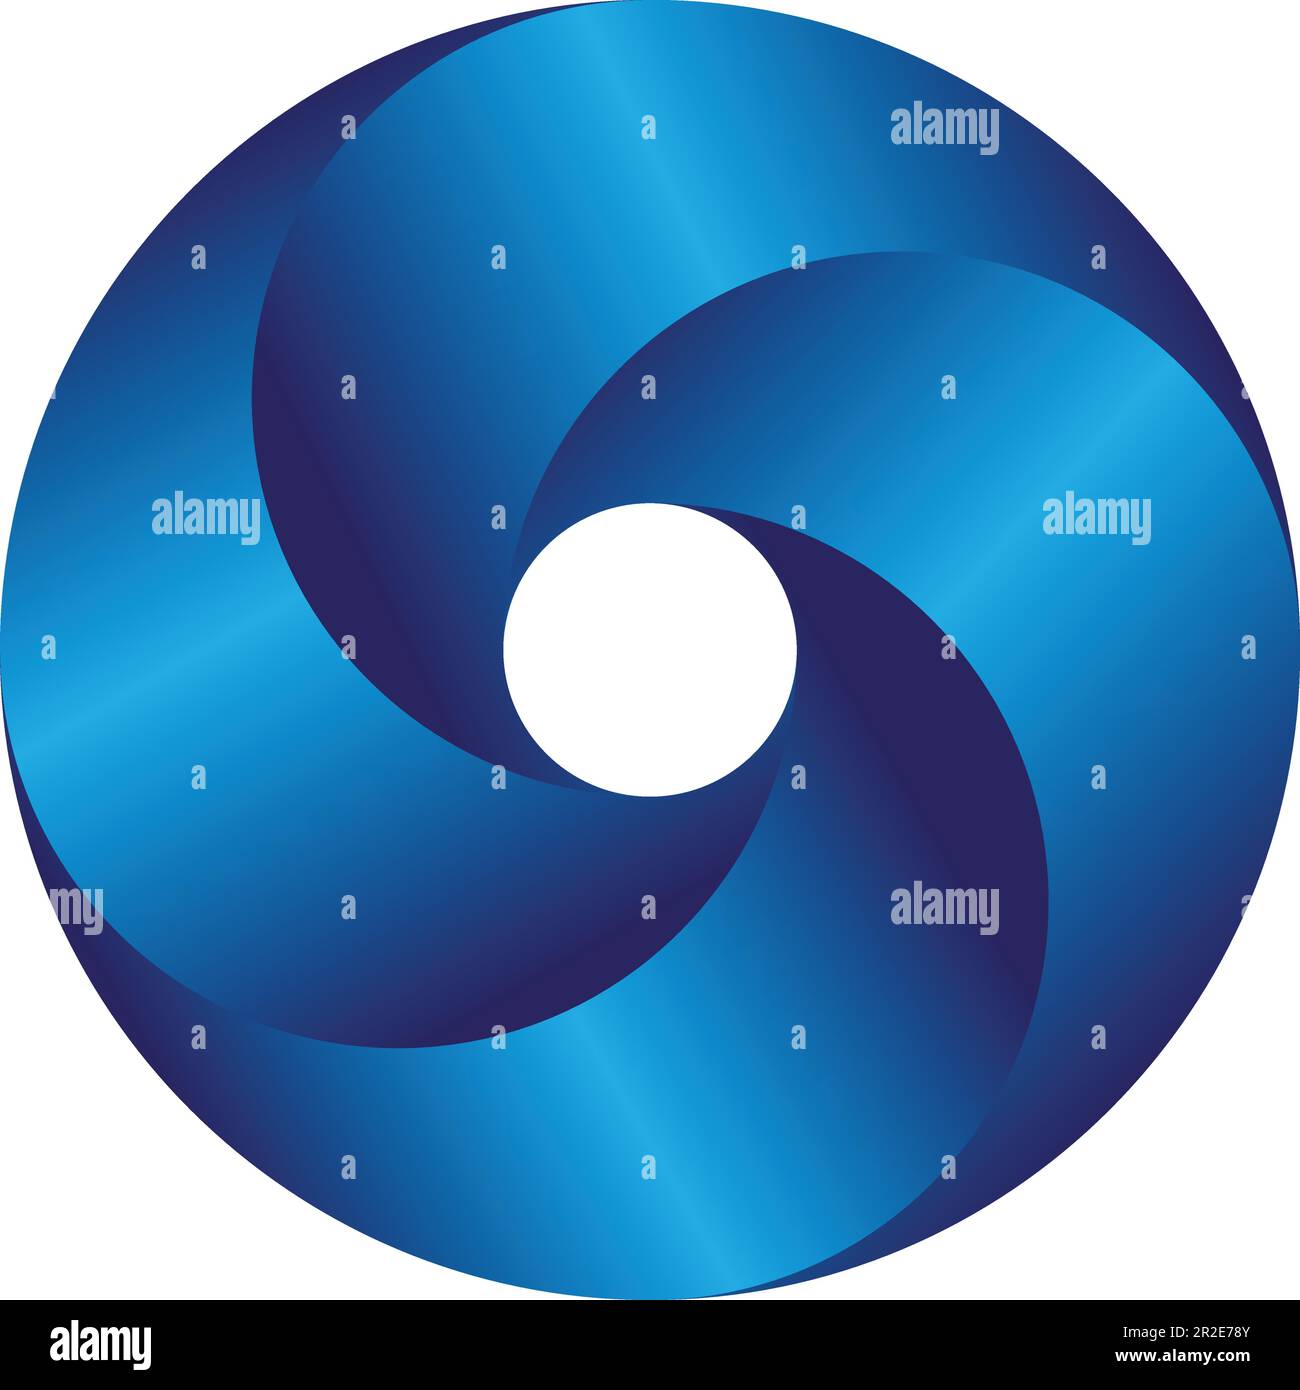 Kreatives Logo-Design. Blauer Verlauf unendliche kreisförmige Form. Optischer Täuschungsbuchstabe O oder ein Ring. Abstrakte geometrische Endlosschleife. Vektordarstellung Stock Vektor